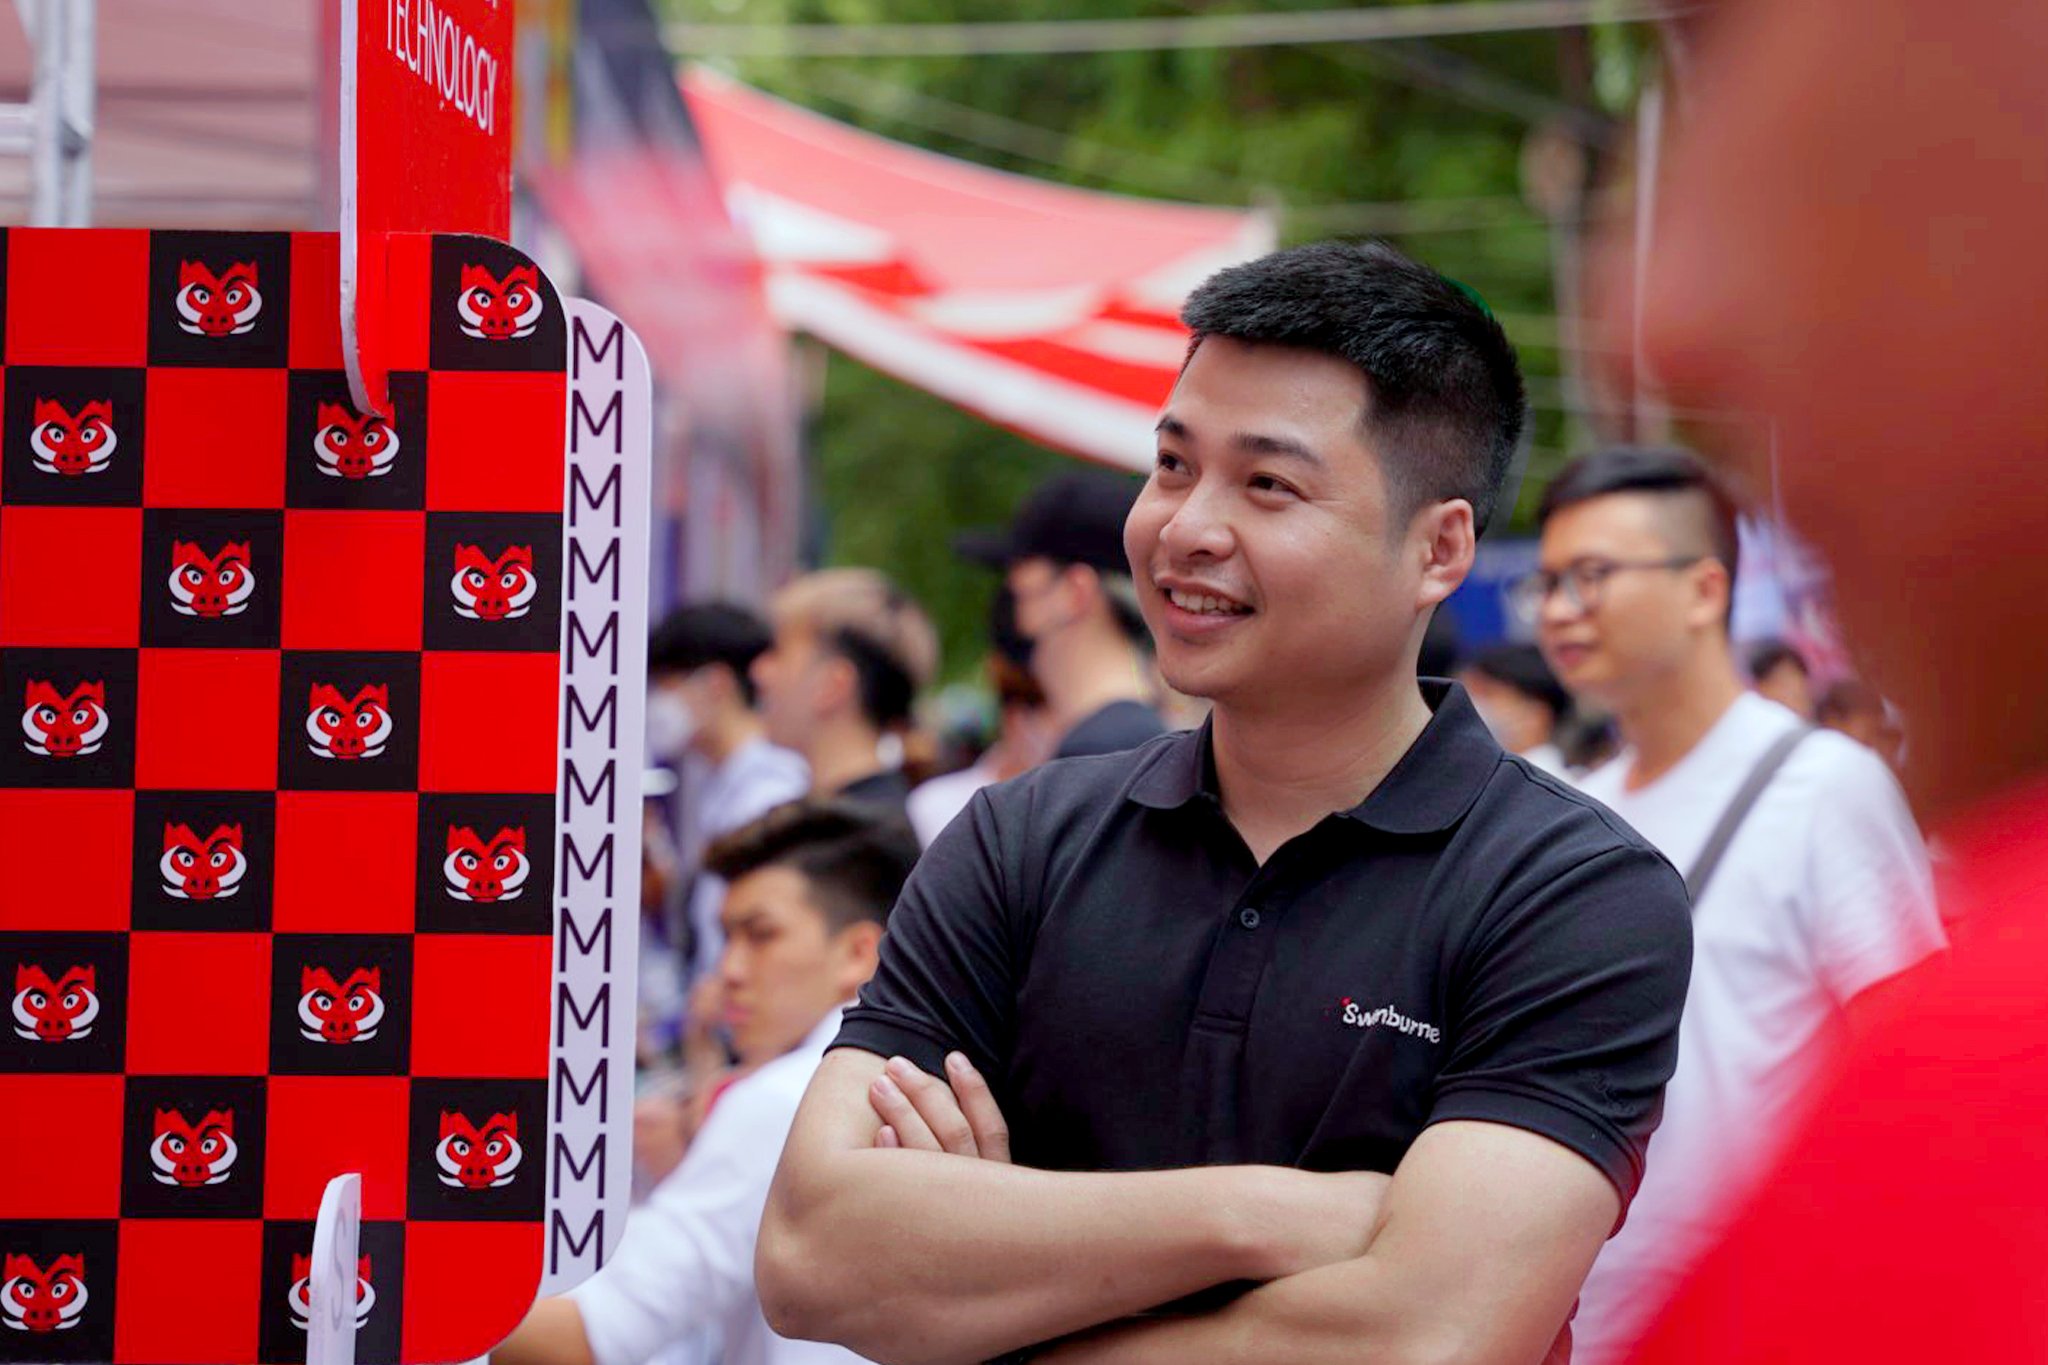 Anh Lại Hồng Anh - Trưởng ban Tuyển sinh và Marketing Swinburne Việt Nam lọt Top FPT 13 Under 35 năm 2022